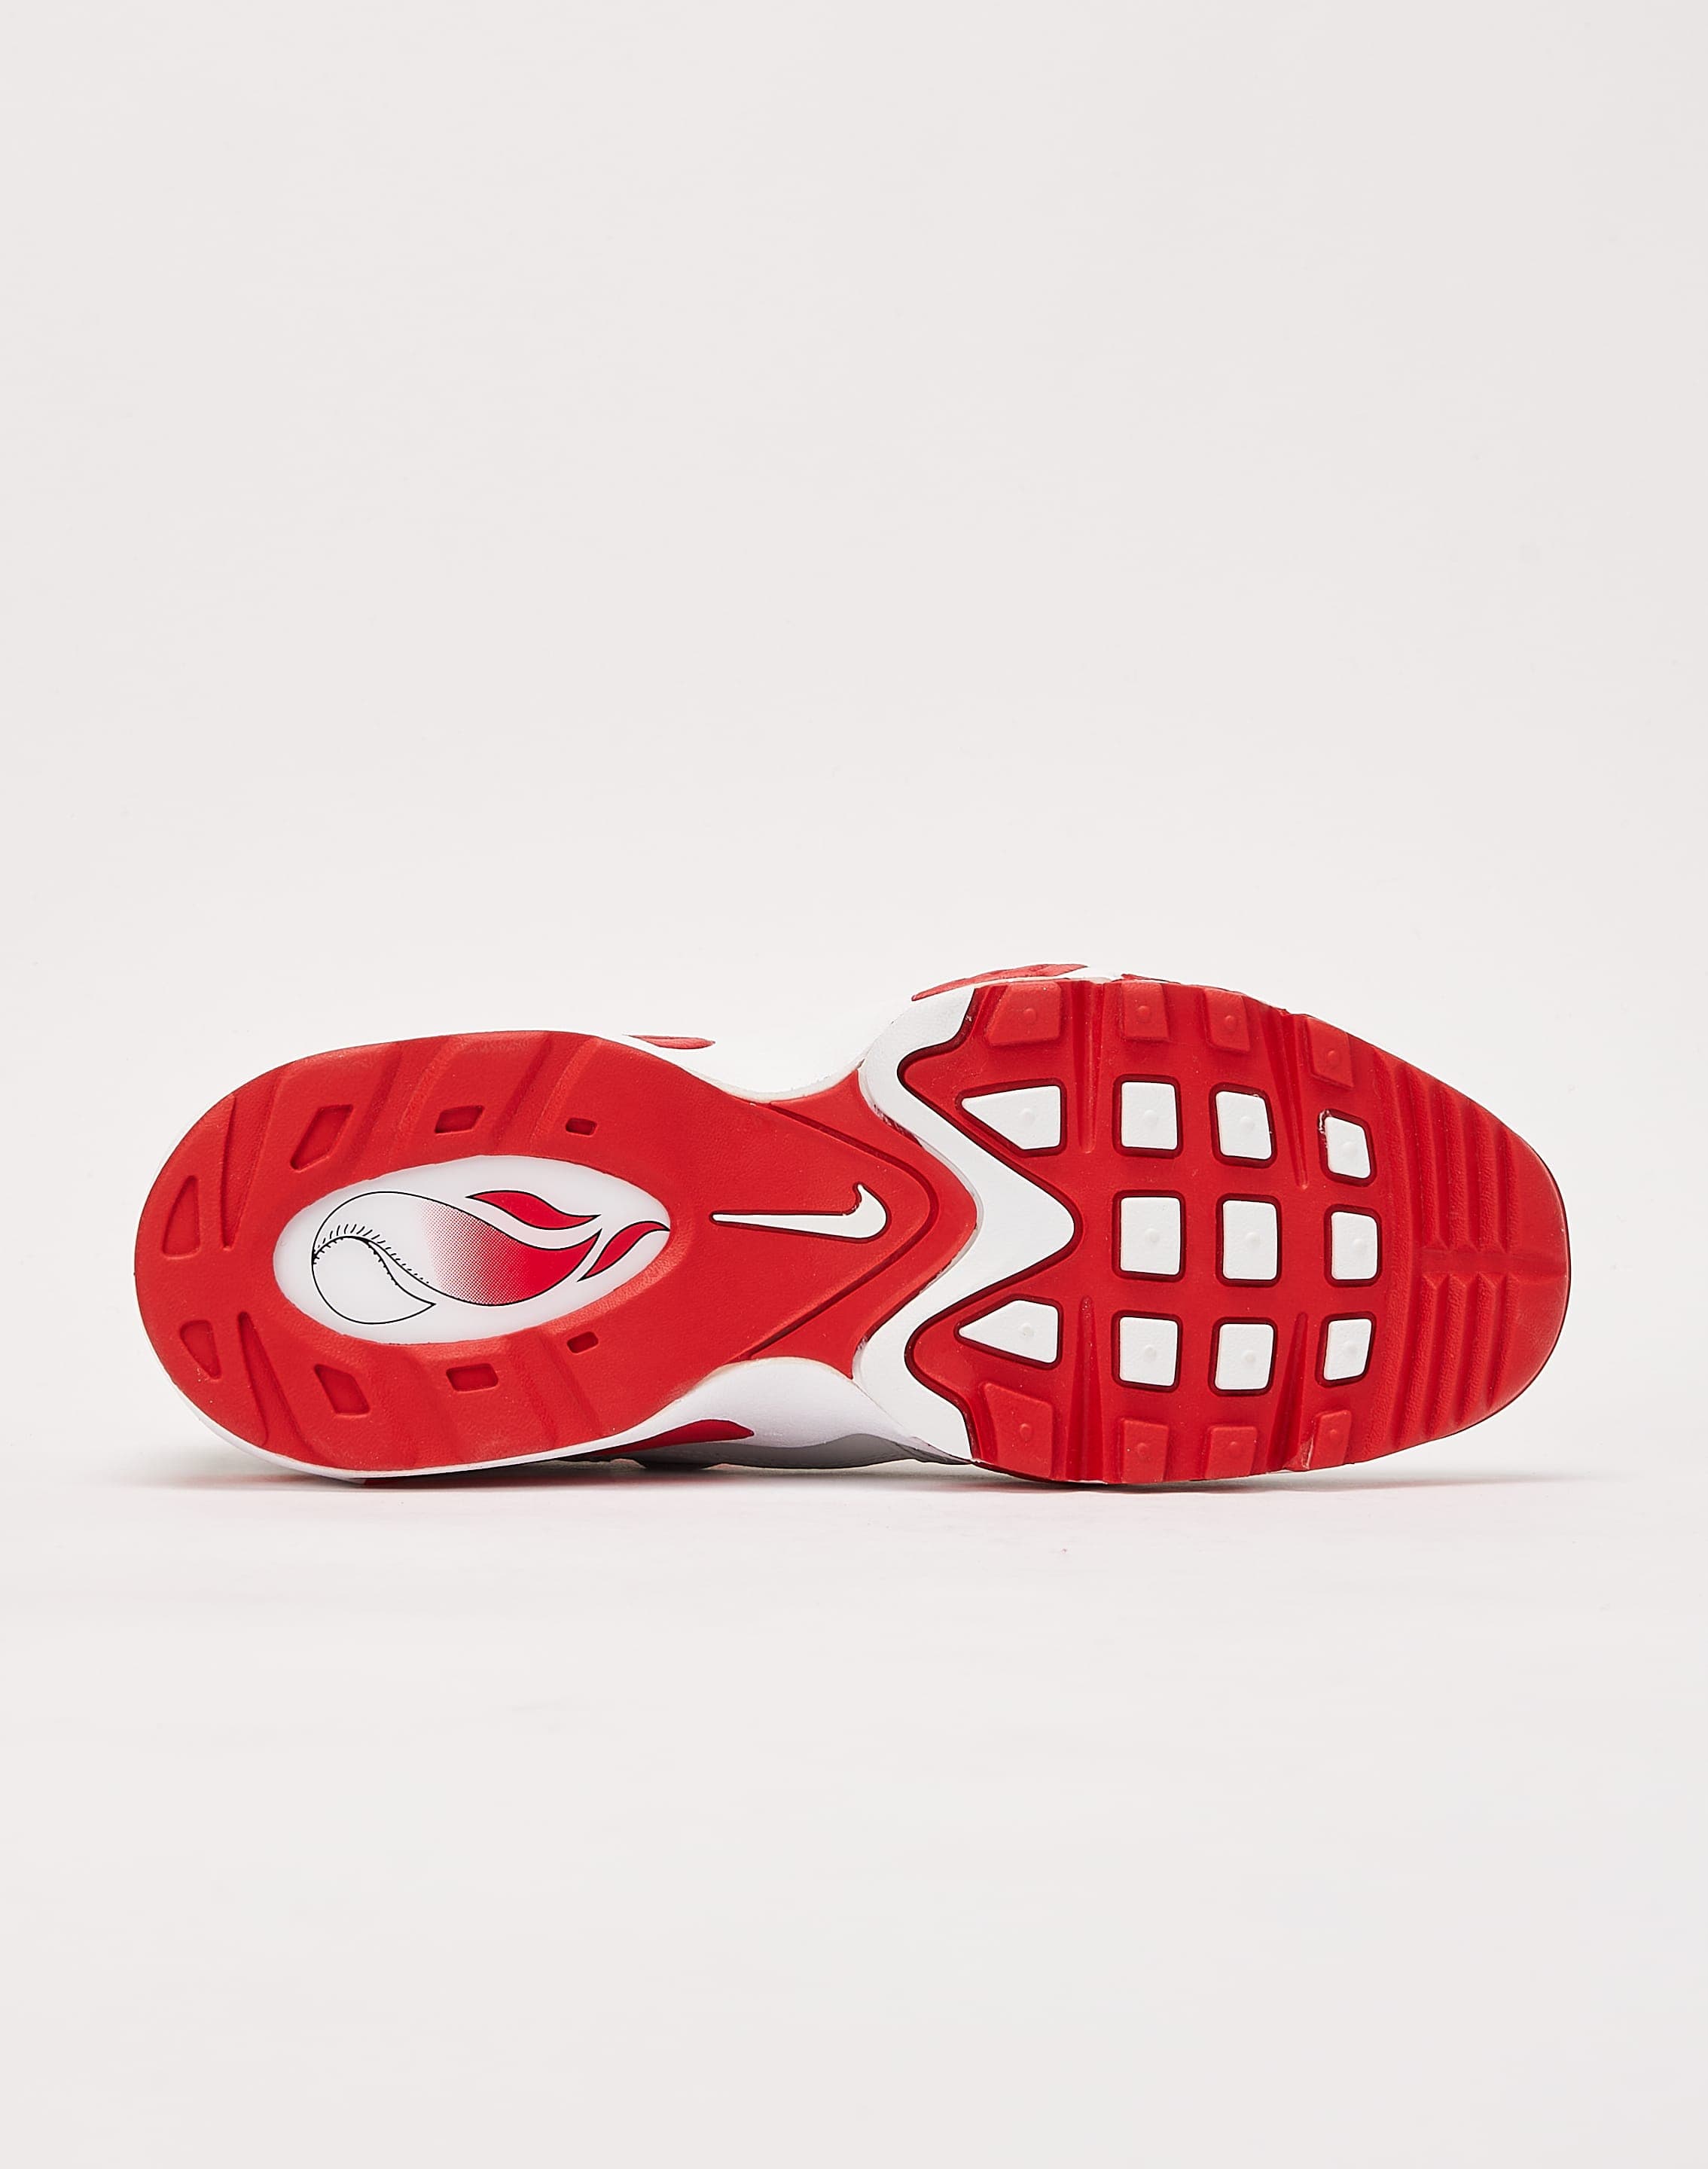 Ken Griffey Jr x Nike Sportswear Footwear Collection